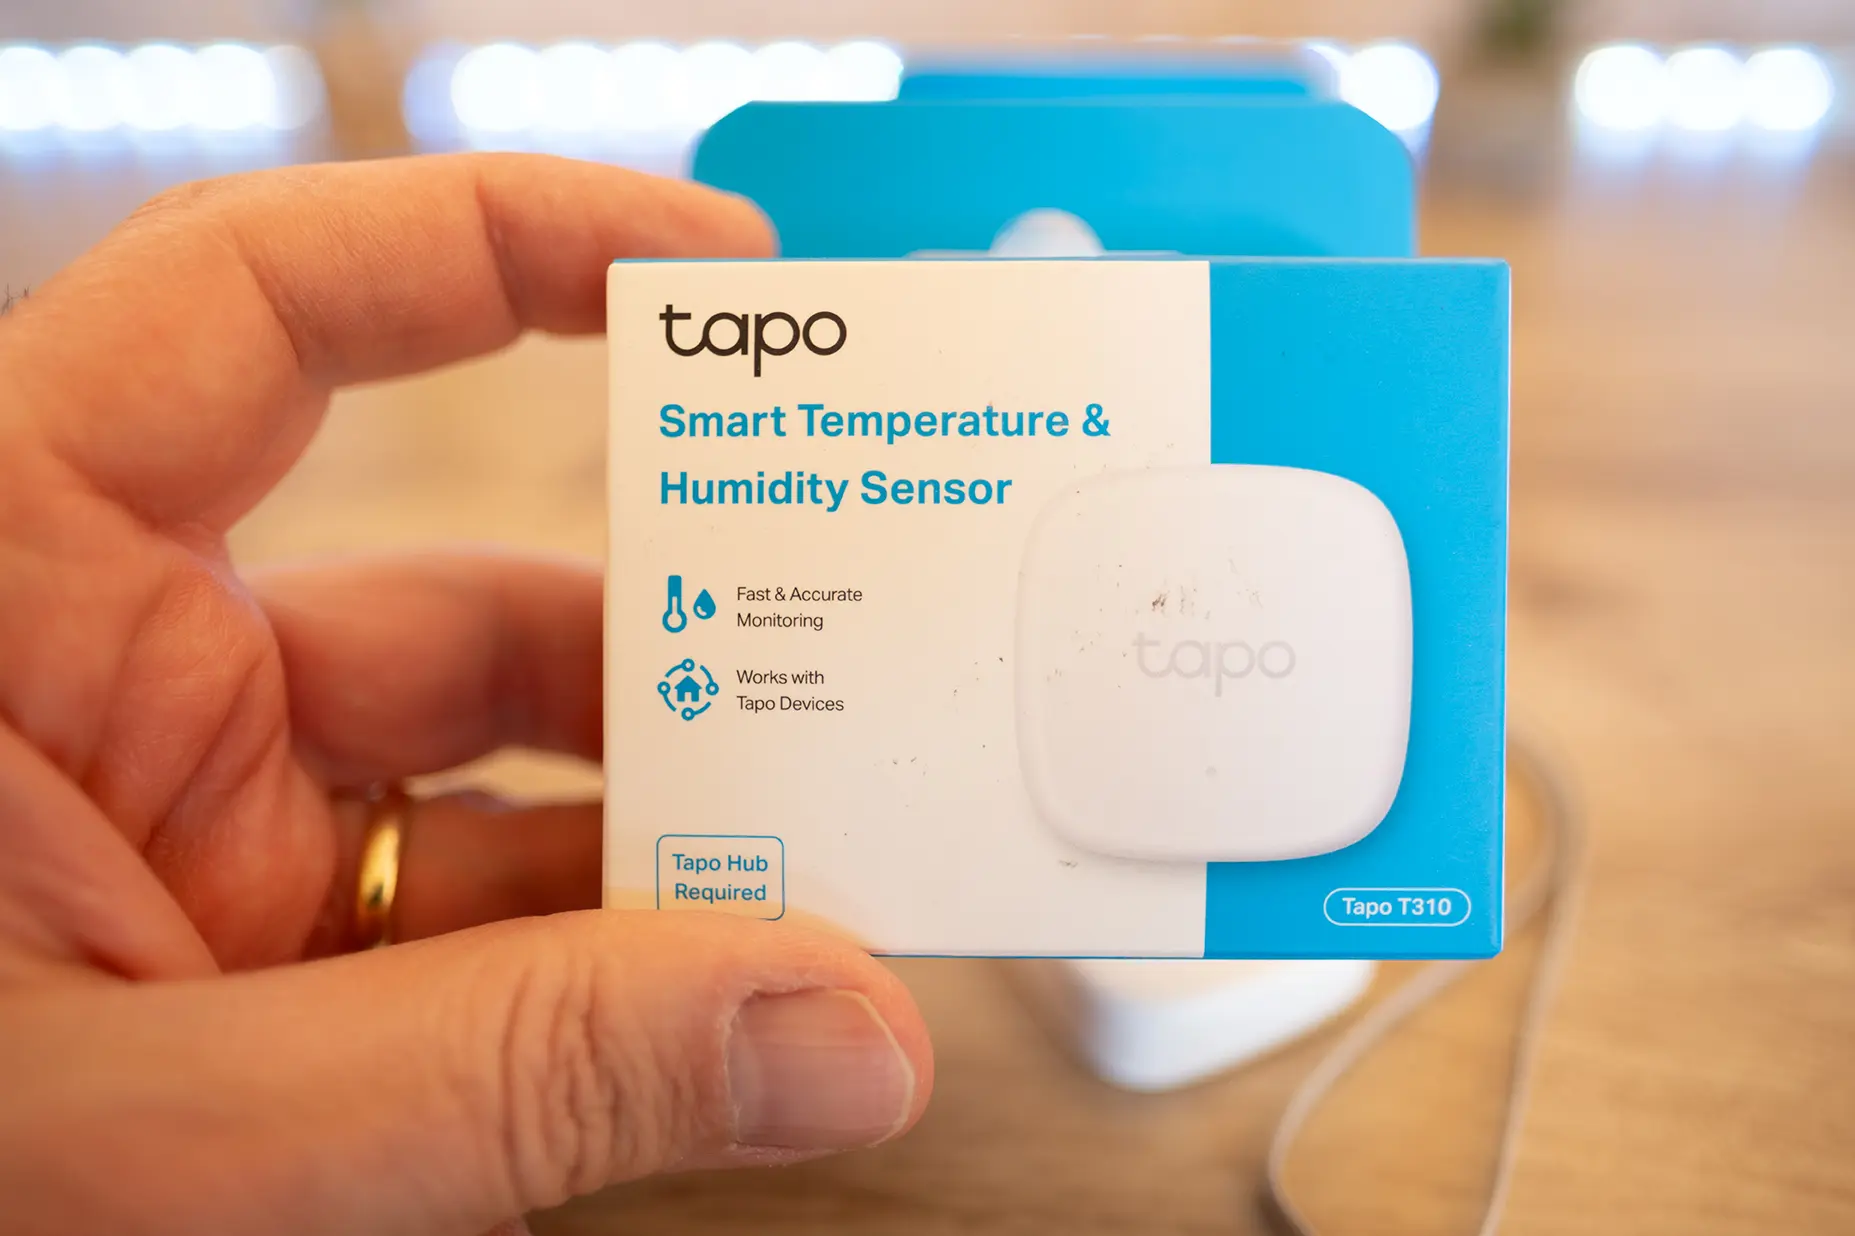 La caja con el sensor de temperatura y humedad TP-Link Tapo T310 en primer plano